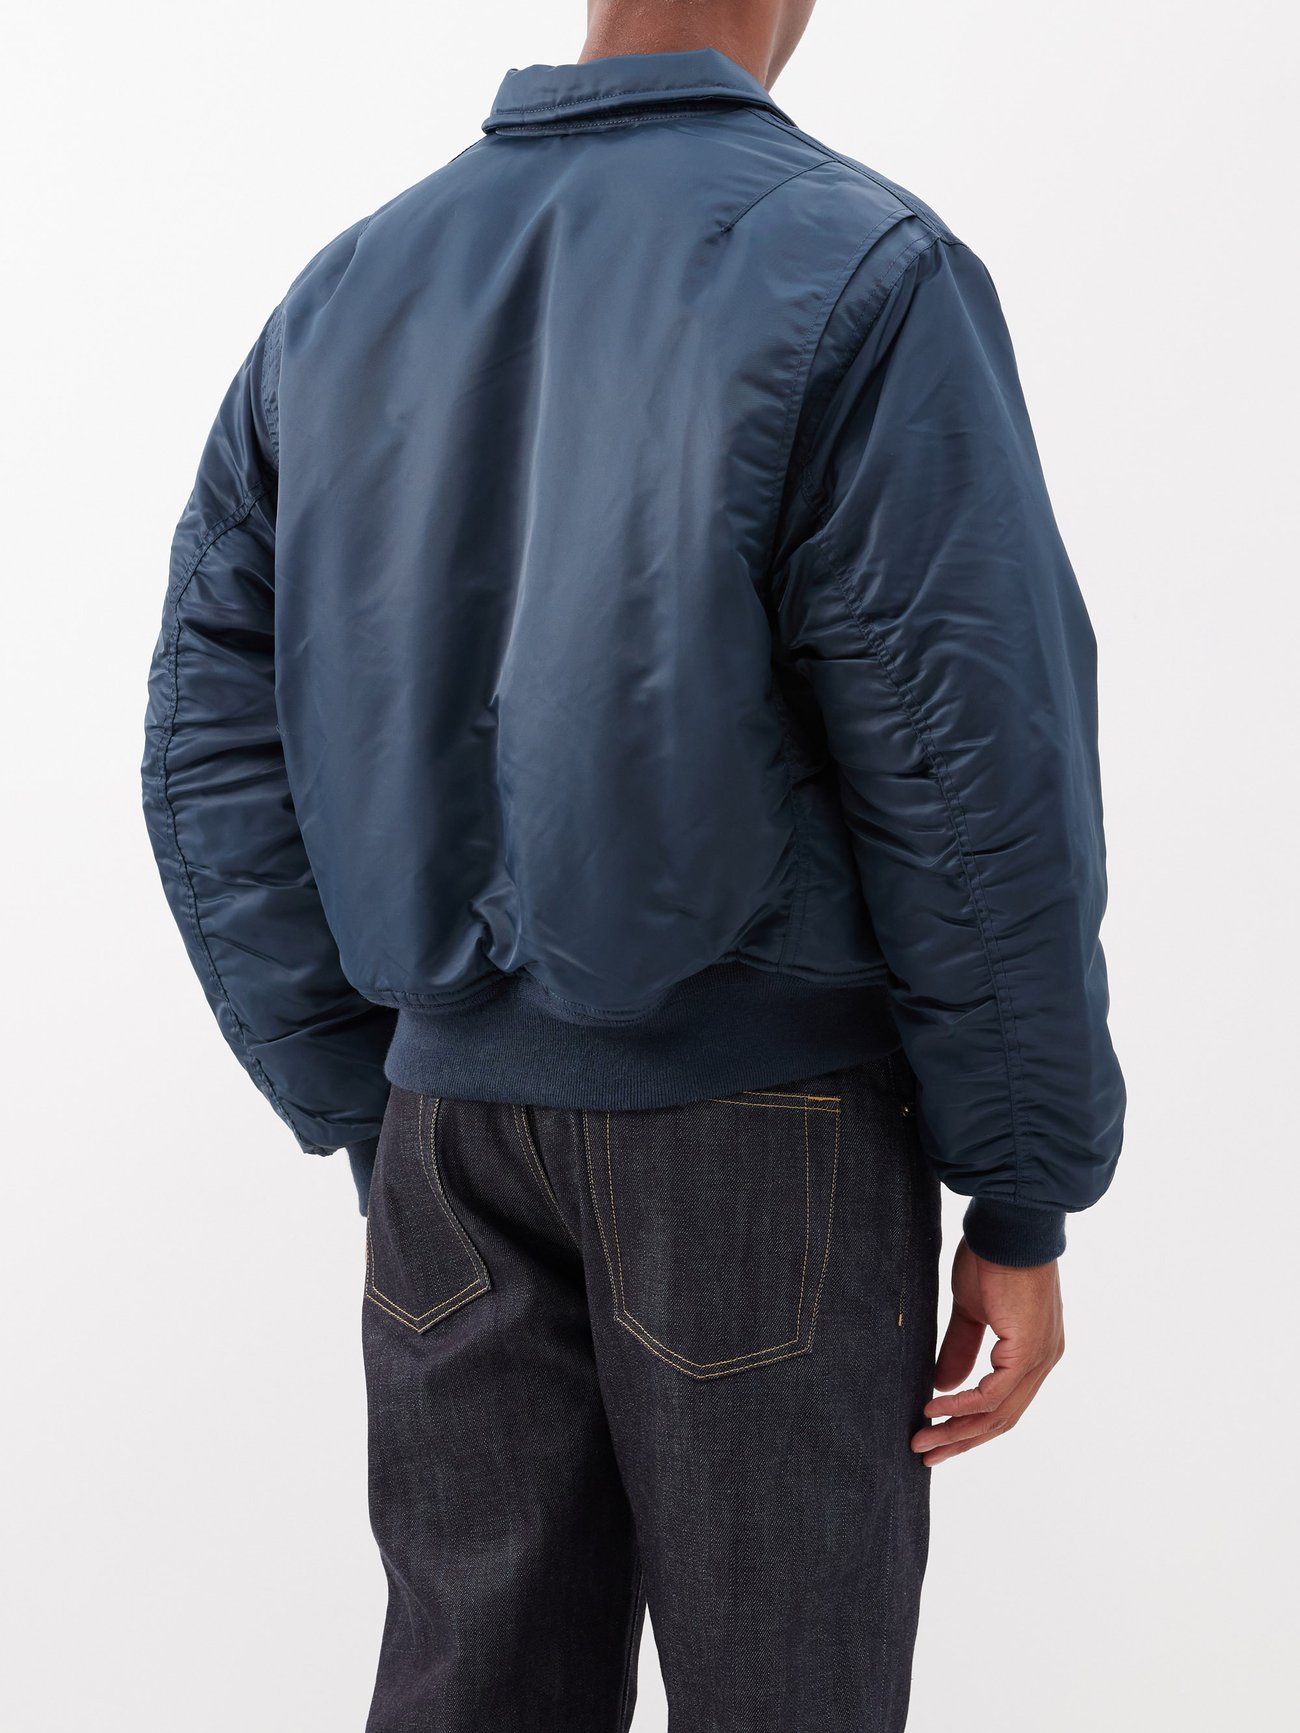 Navy Flap-pocket bomber jacket, Schott NYC